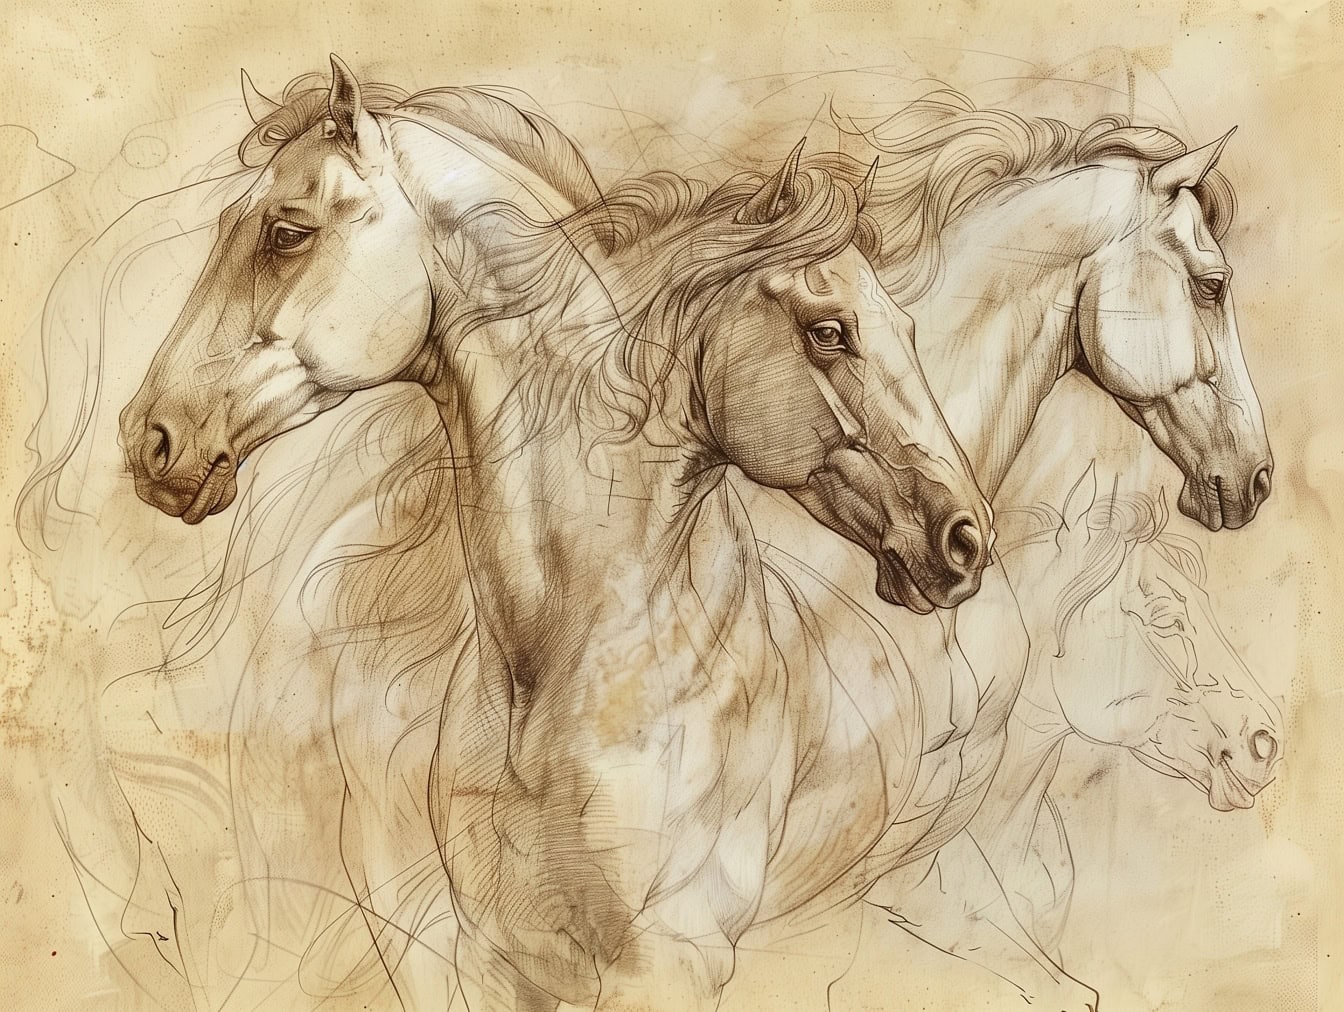 O schiță de lucru neterminată a mai multor cai pe hârtie maro-gălbuie decolorată, care amintește de opera de artă a unui artist medieval